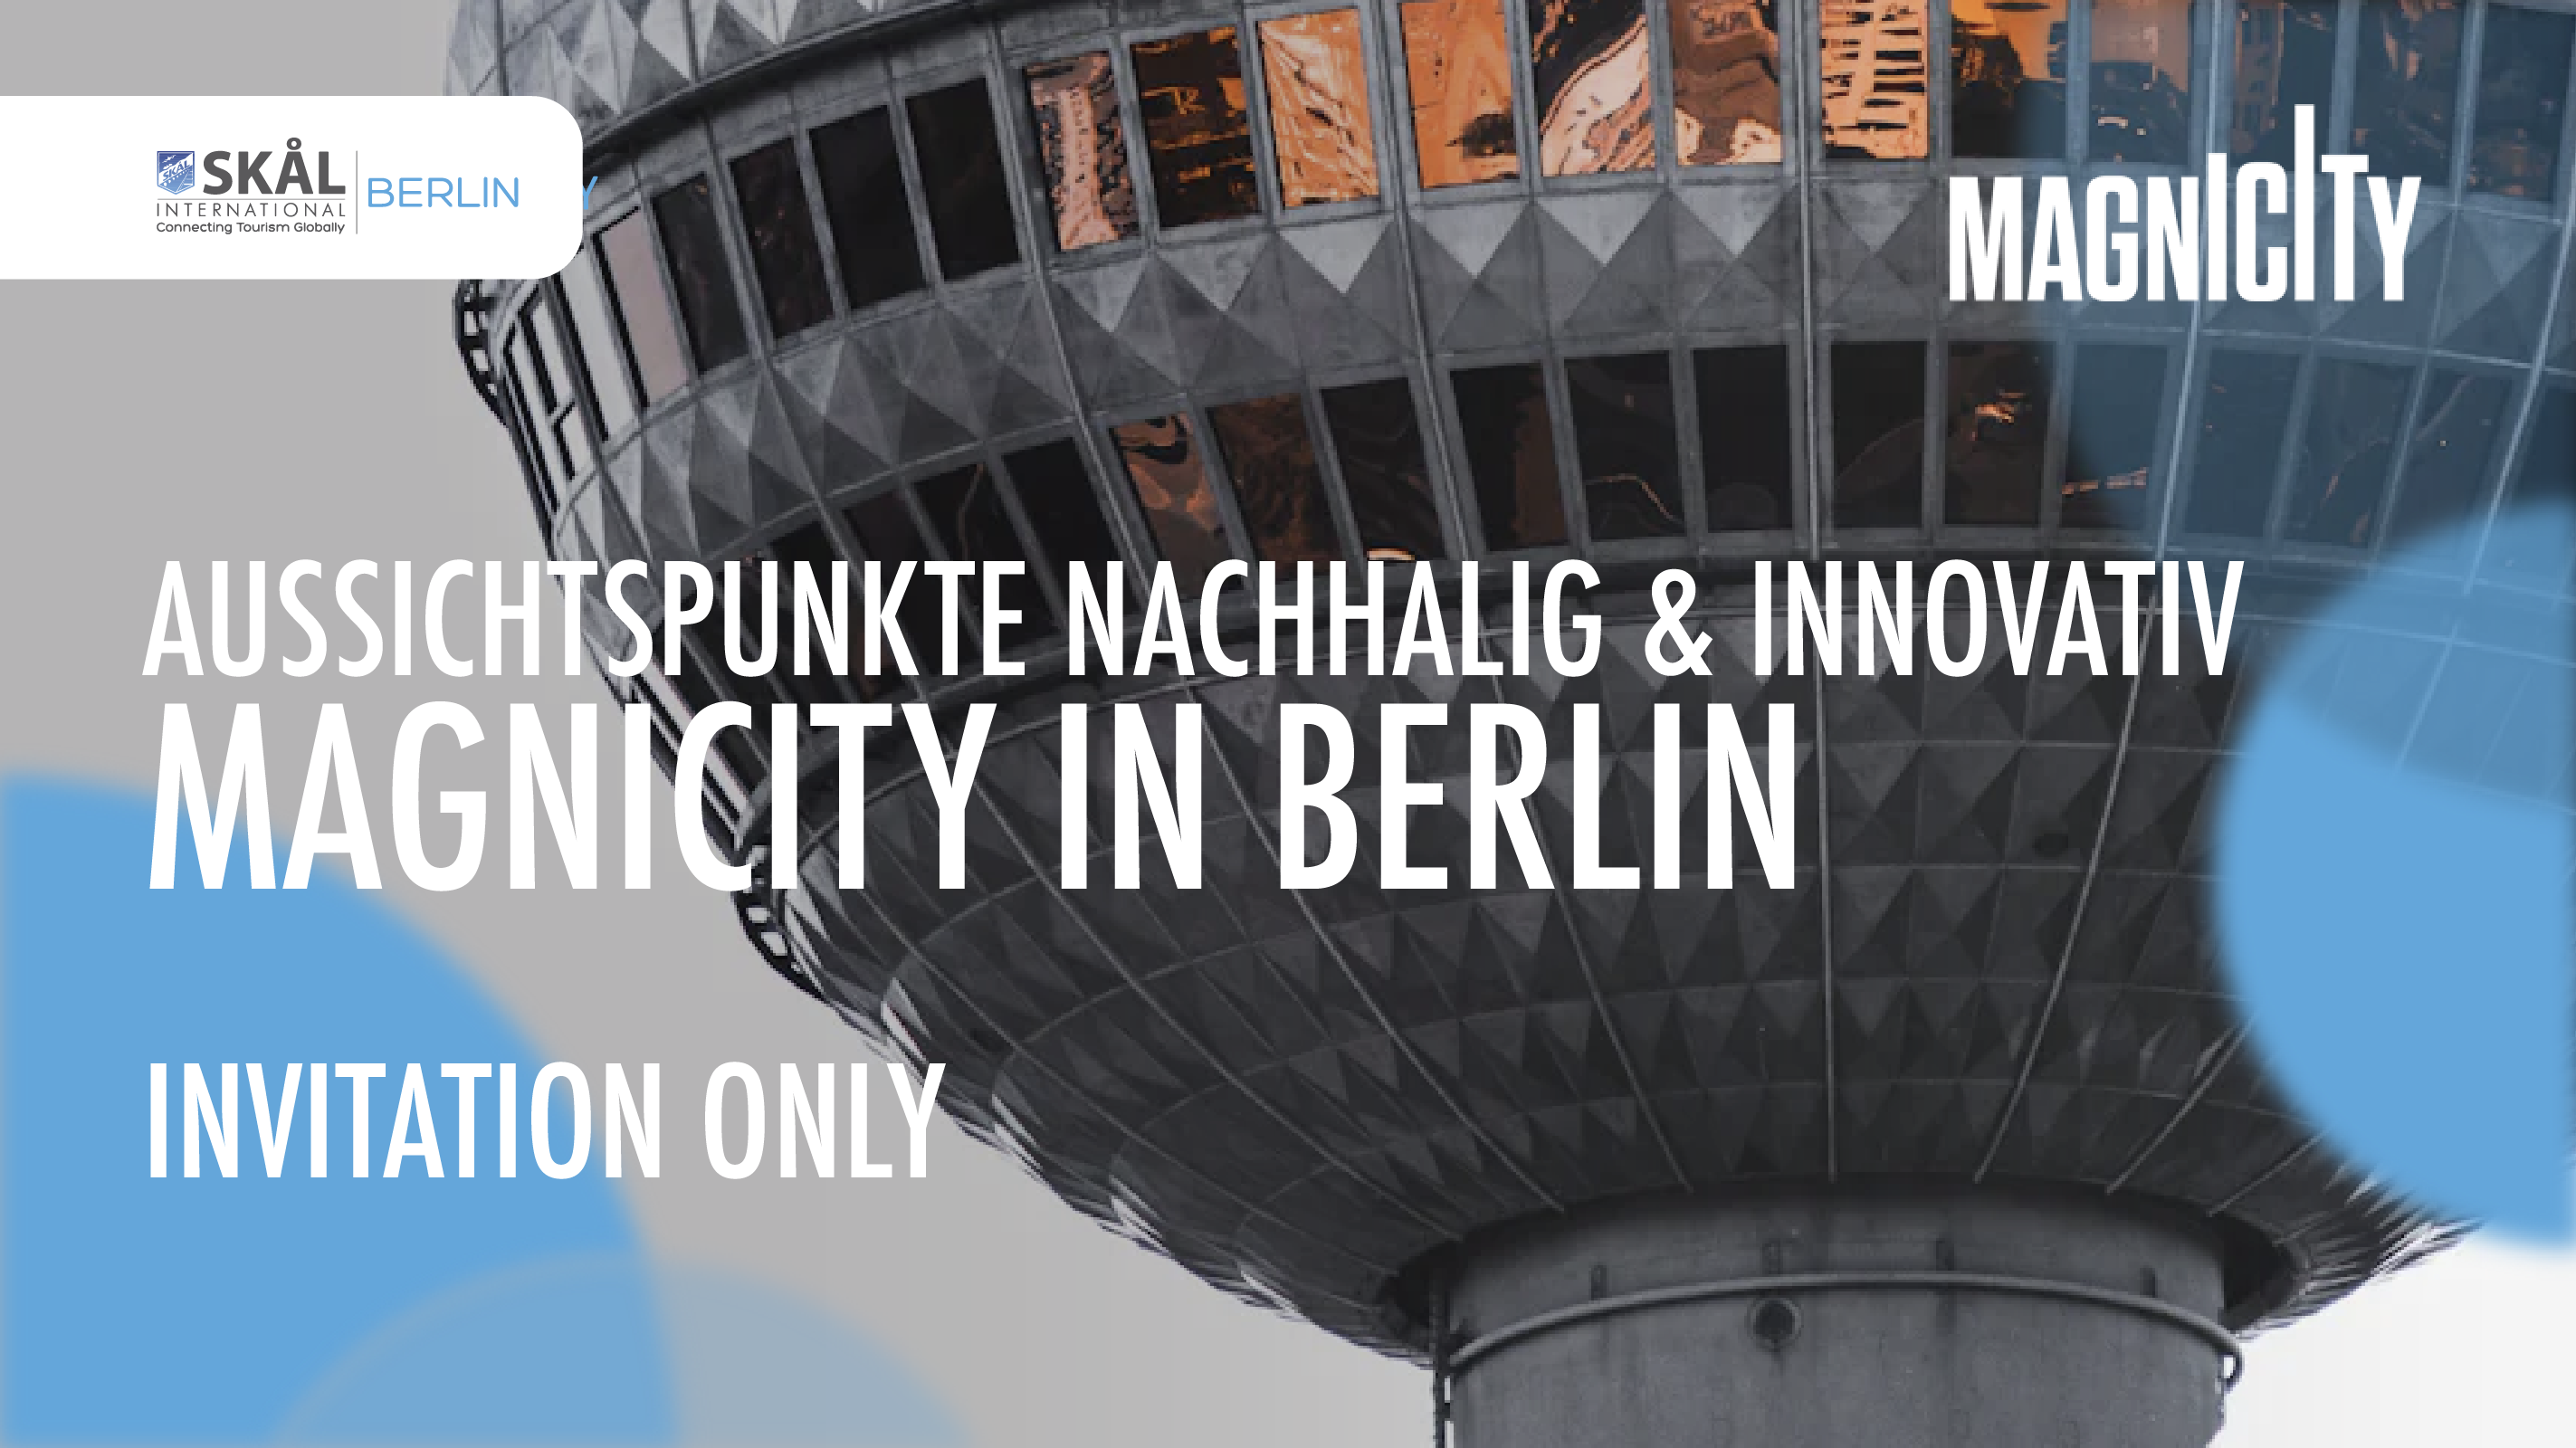 Aussichtspunkte: Nachhaltig & Innovativ - Skal meets Magnicty Berlin